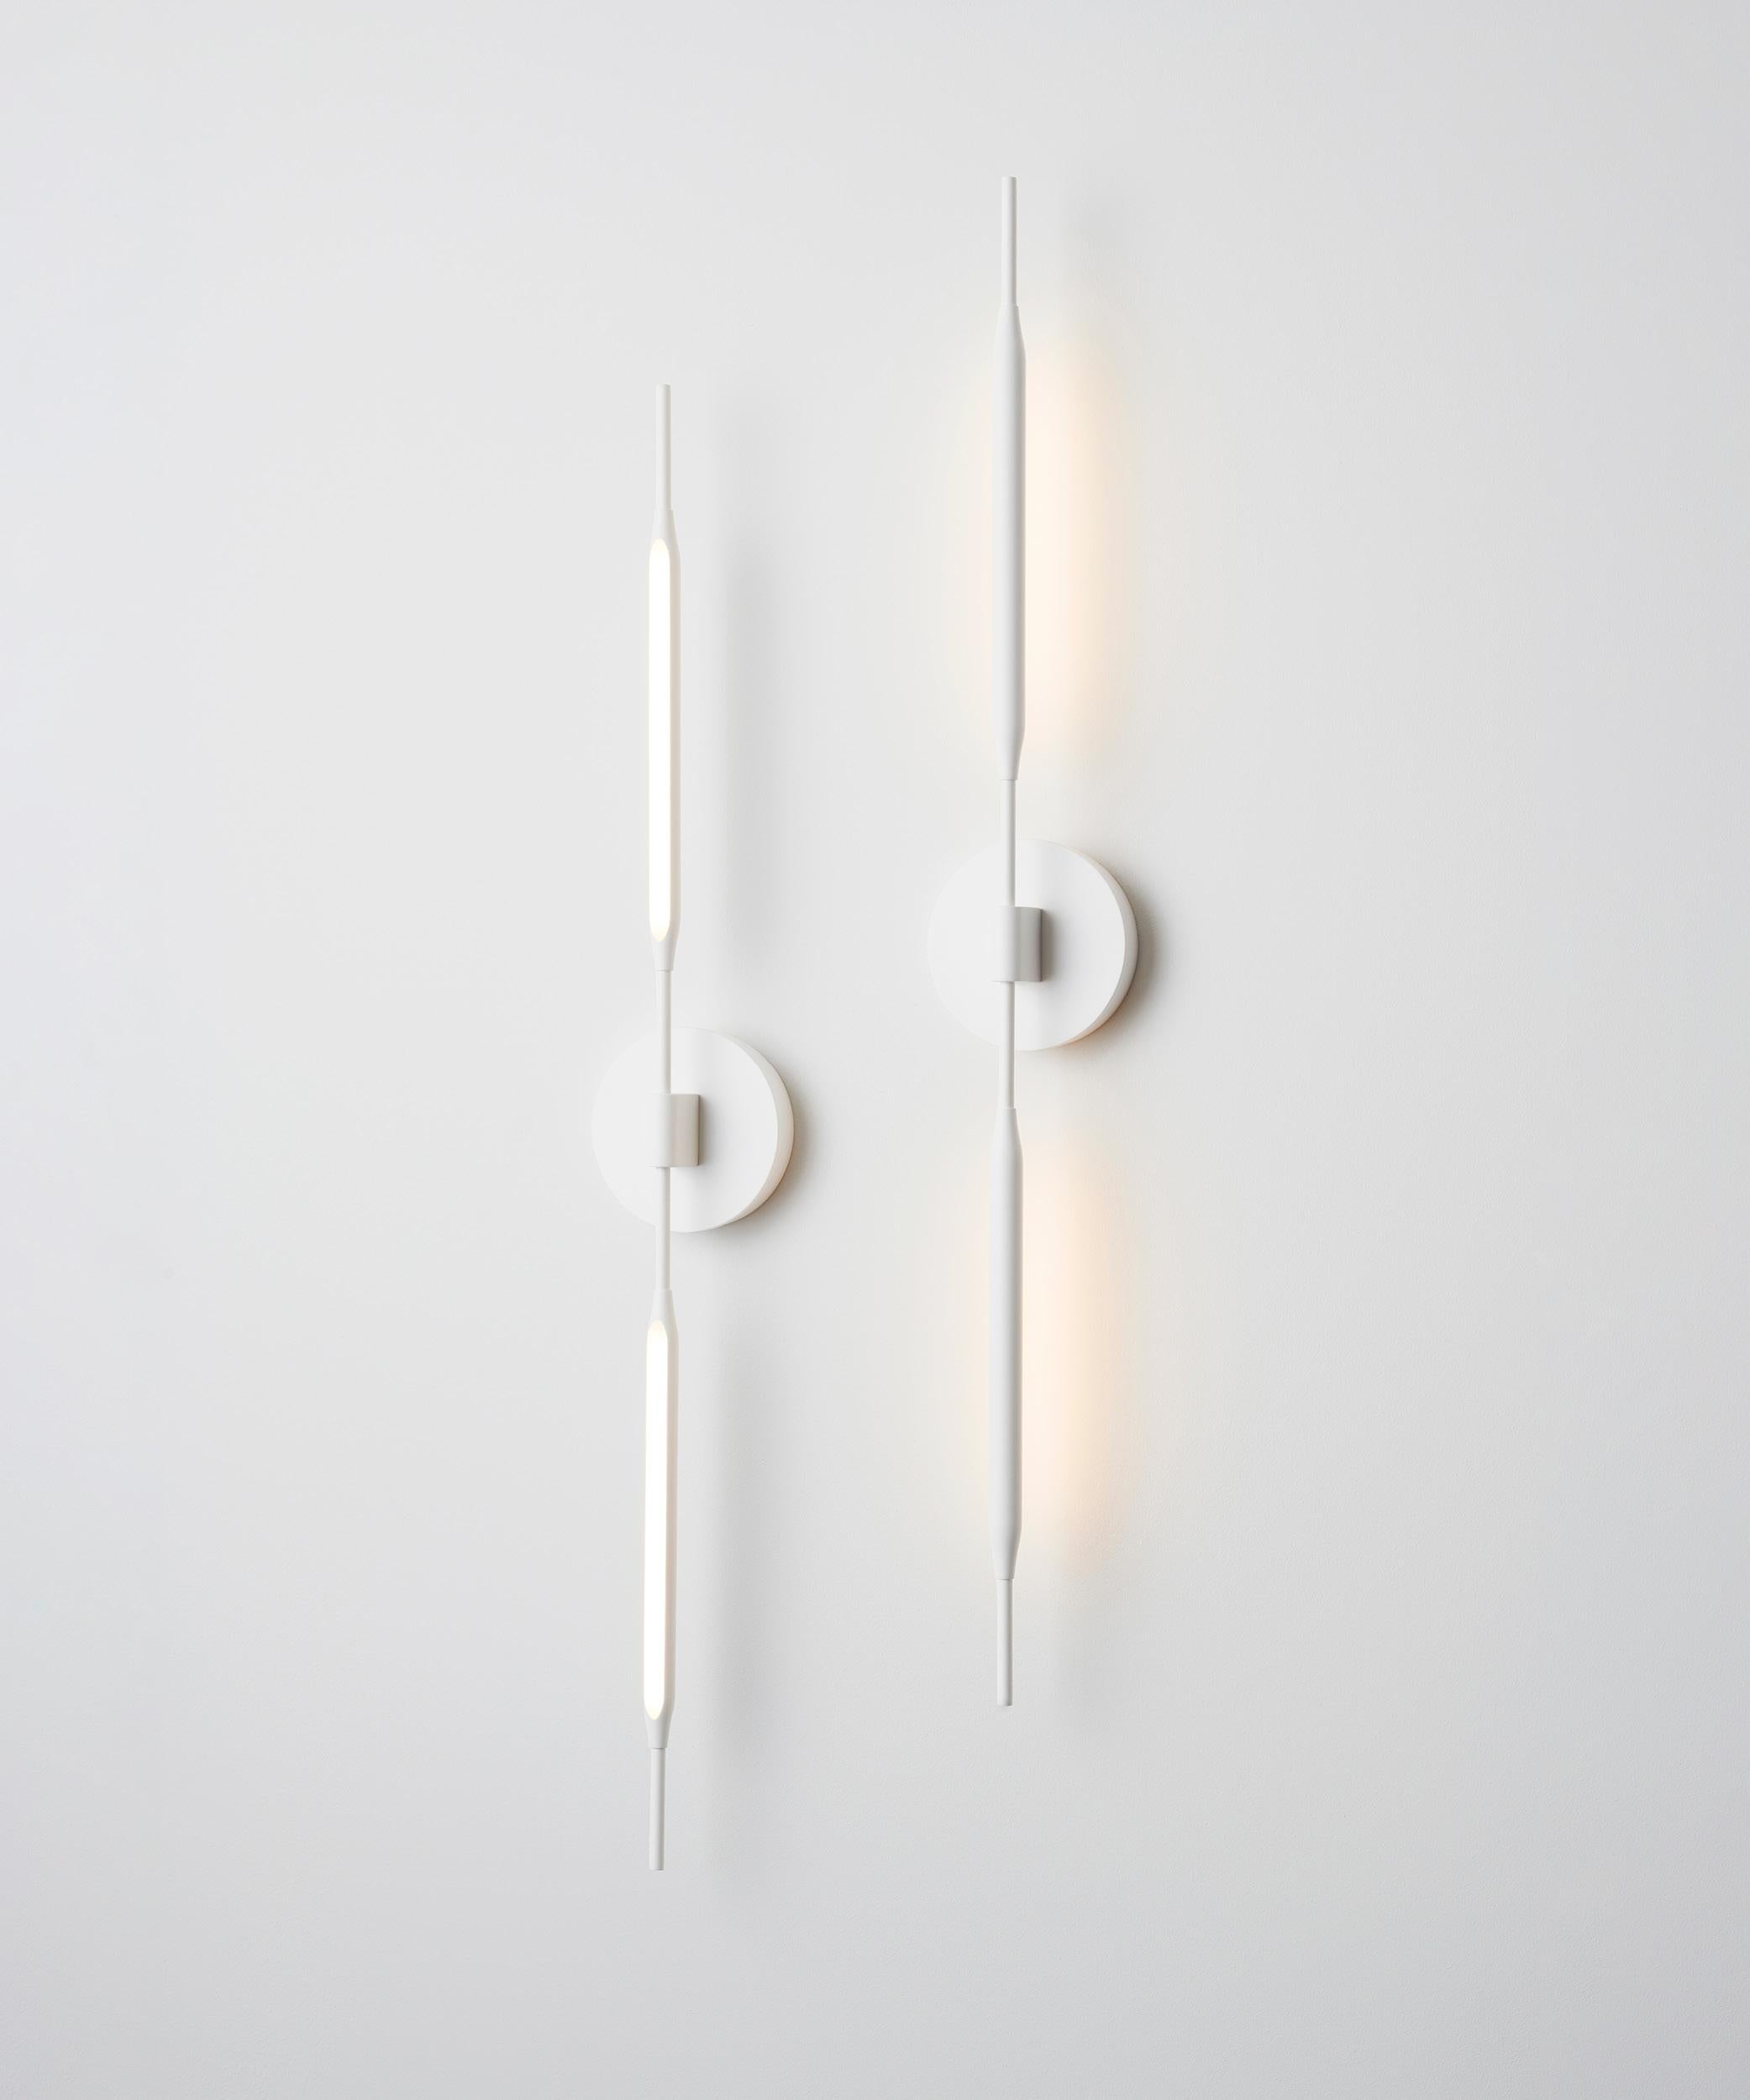 Die Reed Wall Lights sind von schlanken, natürlichen Formen inspiriert und setzen weiche Akzente in der Innenbeleuchtung. In Verbindung mit den tragbaren Reed Luminaire wird ihre Vielseitigkeit mit einer einzigartigen Ästhetik kombiniert. Die